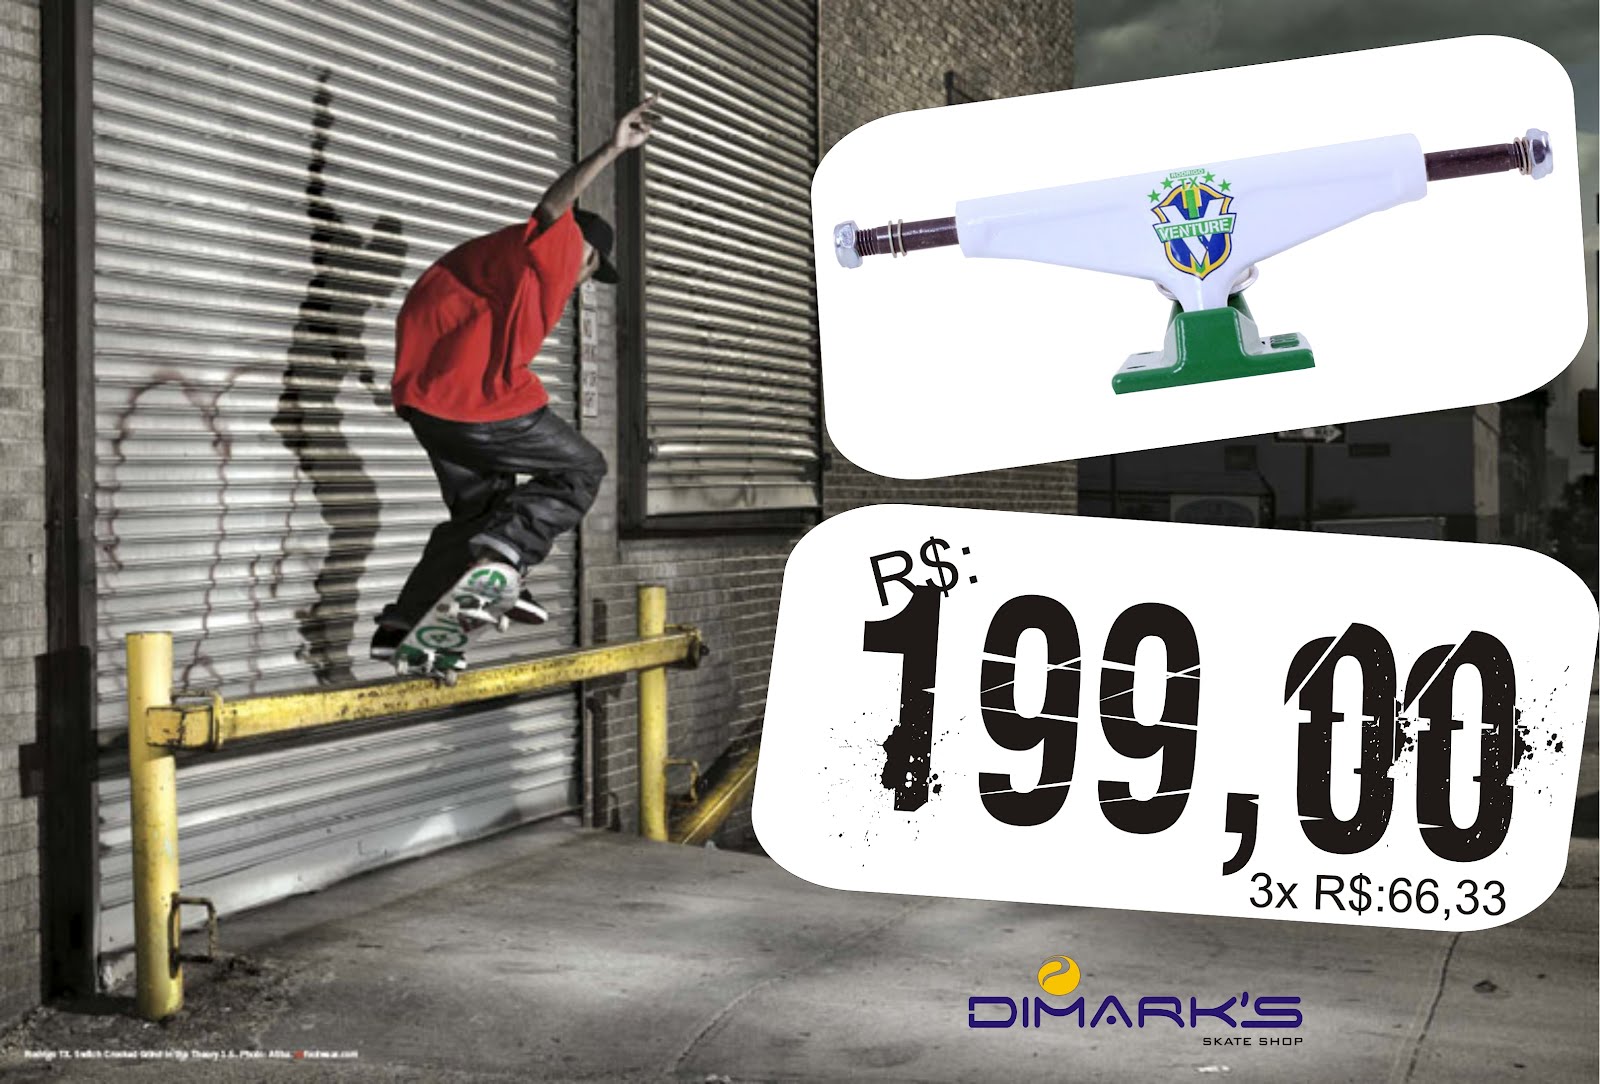 Dimarks skate shop: Novos Truck Venture